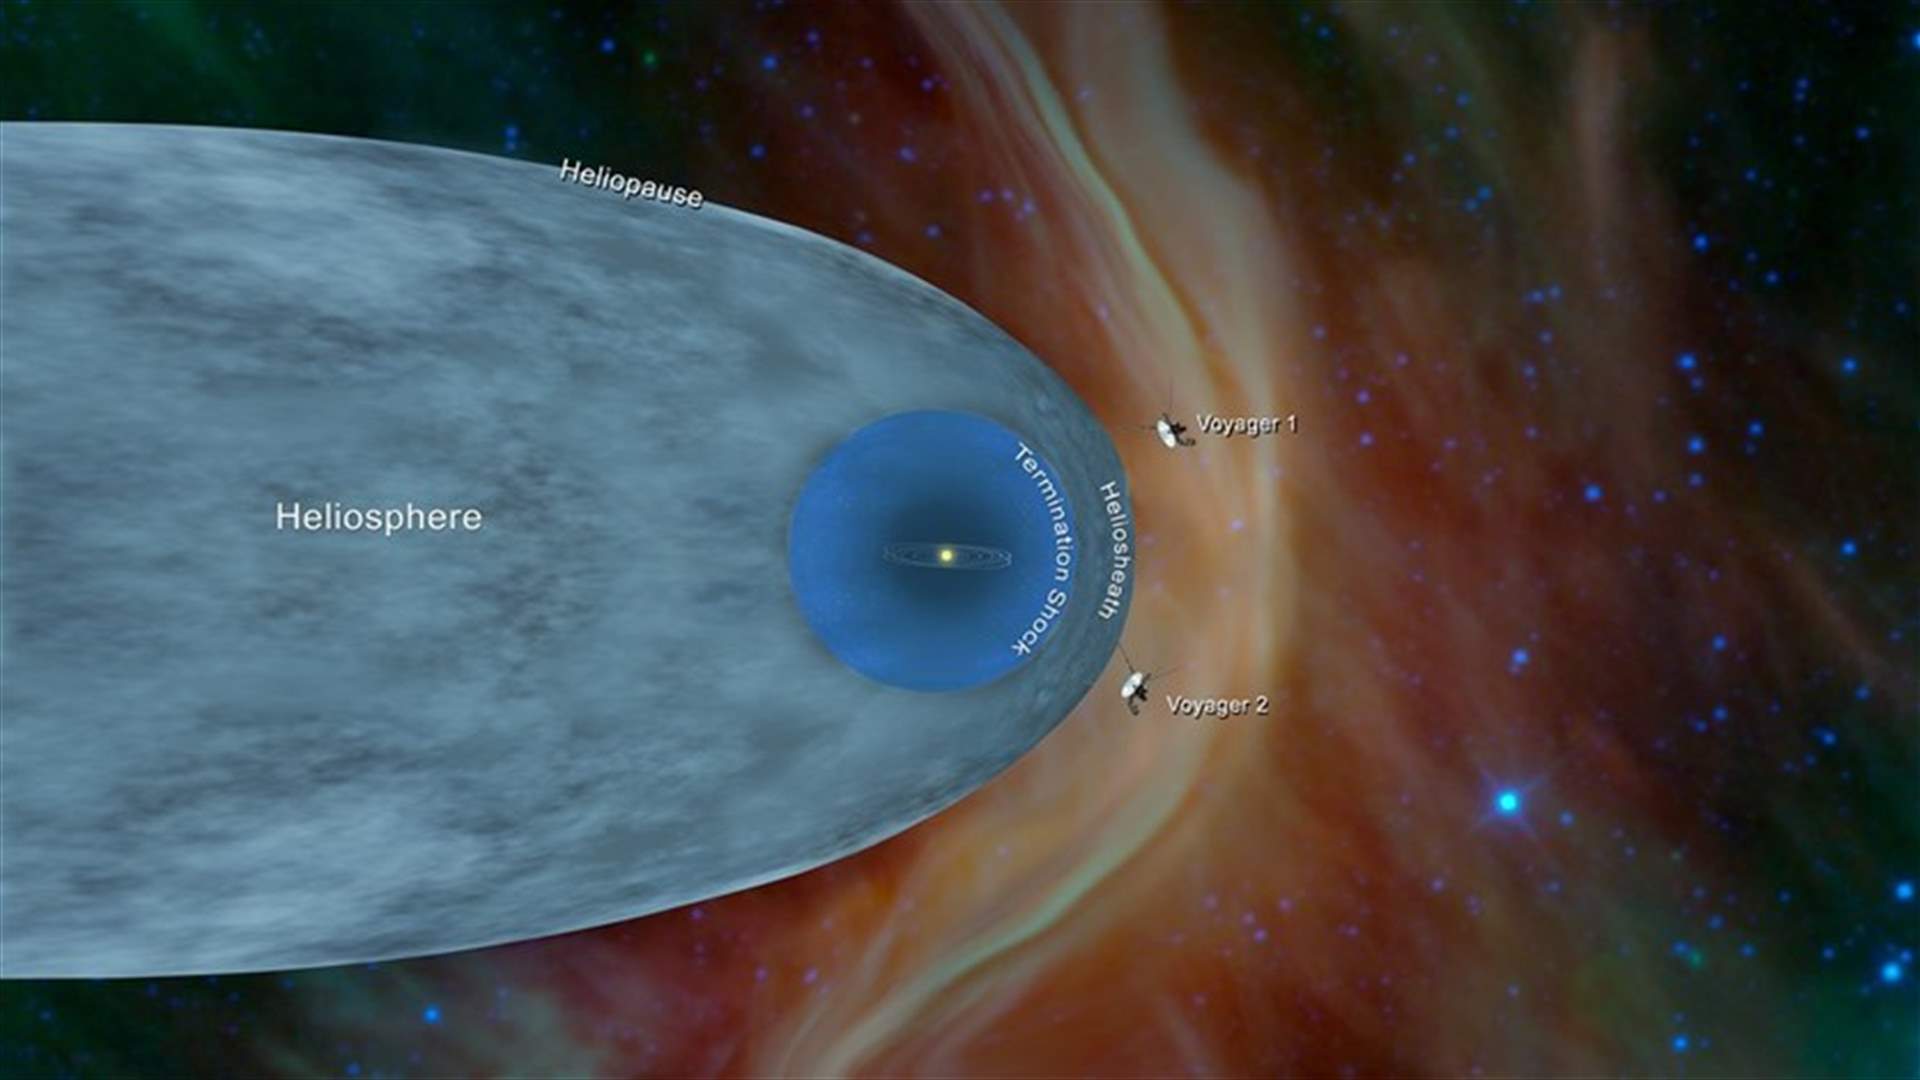 مسبار ناسا Voyager 2 يدخل الفضاء بين النجوم (فيديو)